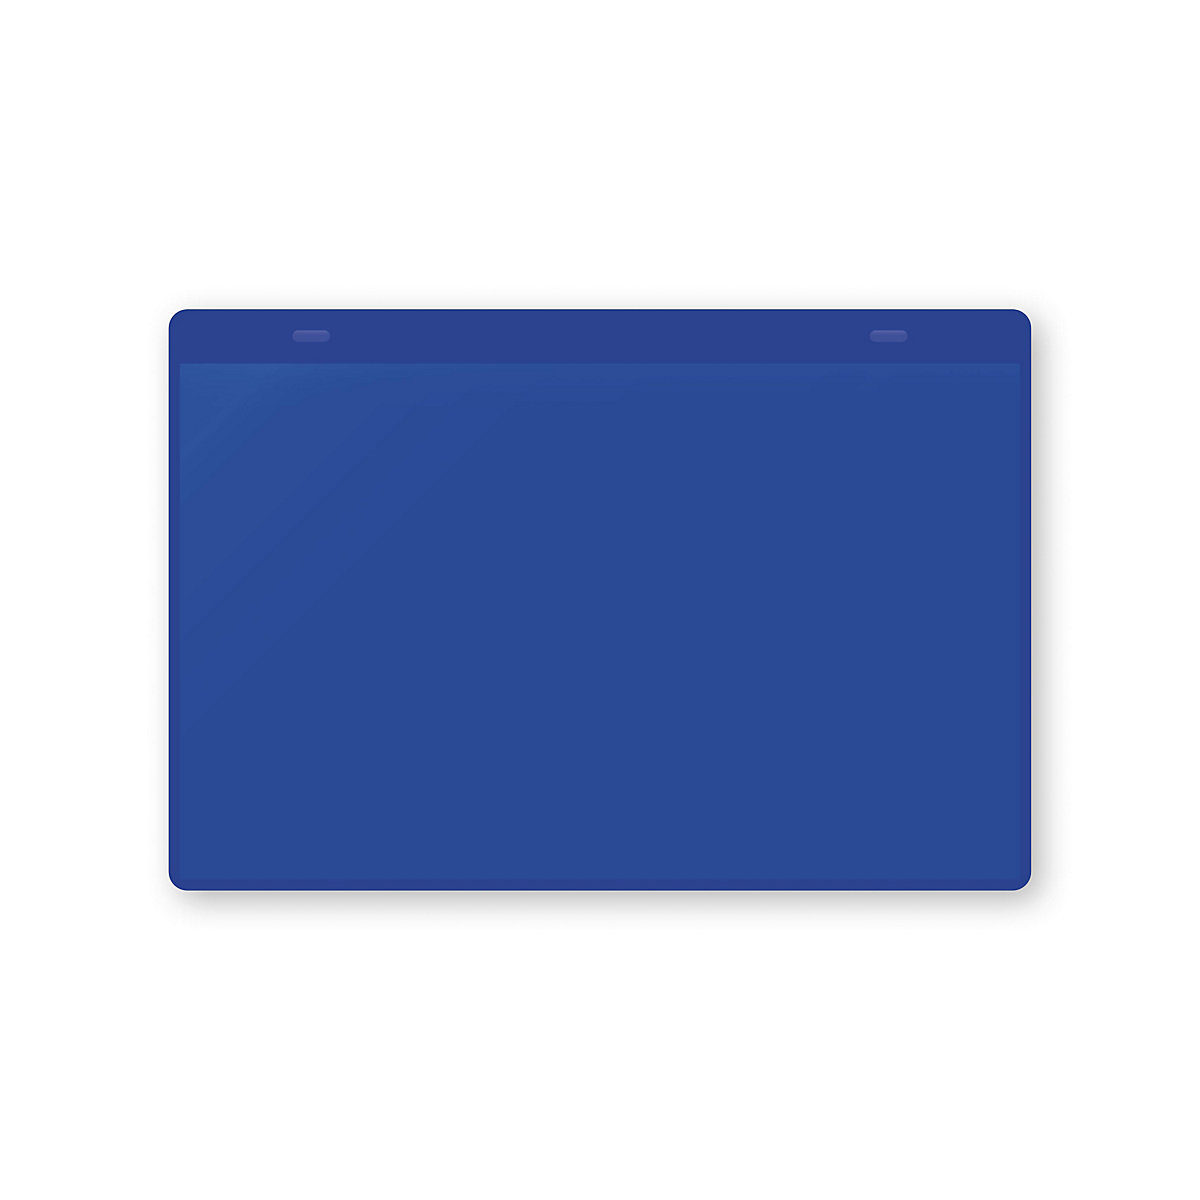 Pochettes porte-documents avec languettes d'accrochage, format A5 à l'horizontale, lot de 50, bleu